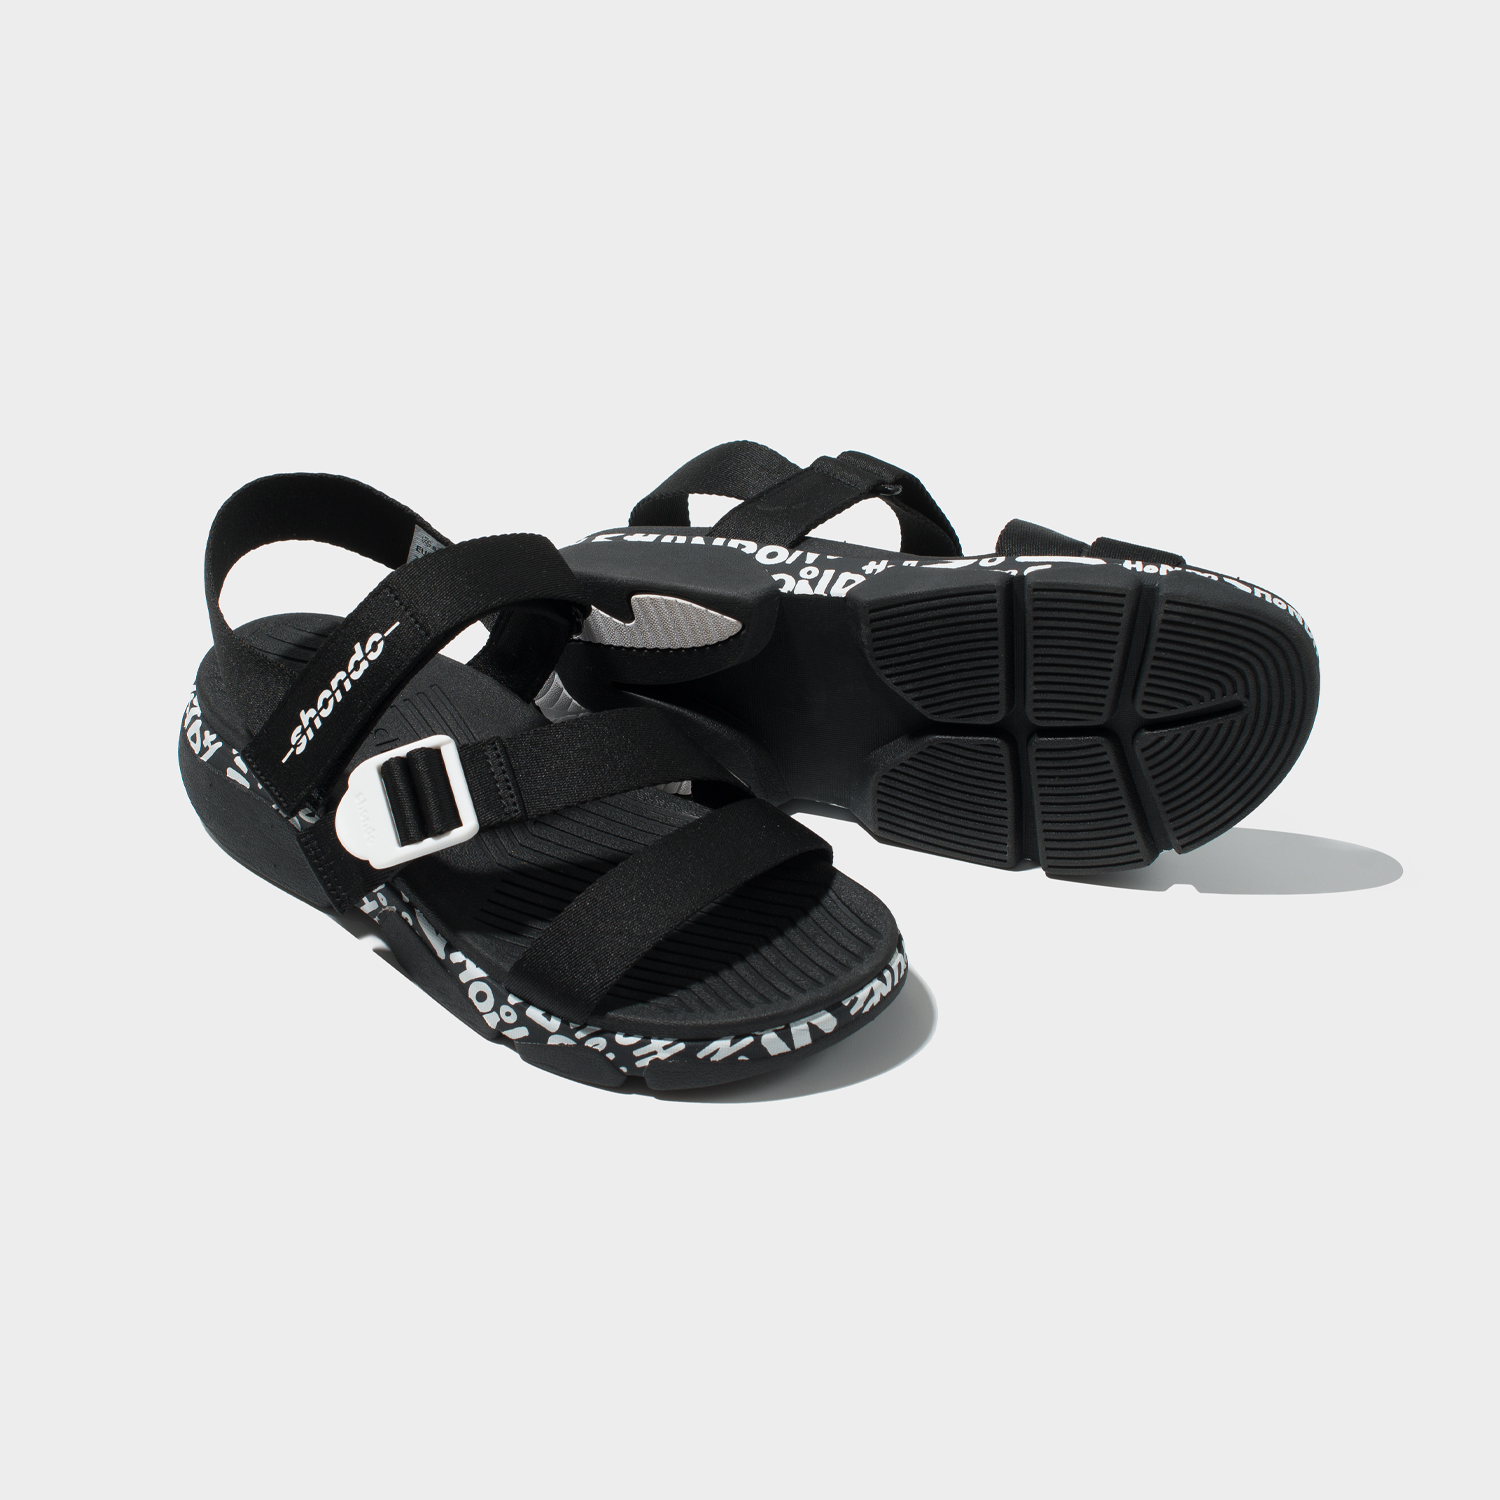 Chắc chắn đôi giày Sandal SHONDO sẽ là lựa chọn hoàn hảo cho những ngày hè nóng bức. Với thiết kế đơn giản, chất liệu nhẹ và đế giày êm ái, đôi giày sẽ mang lại cho bạn sự thoải mái và dễ chịu trong suốt cả ngày. Hãy đến và khám phá ngay những ưu điểm đáng ngạc nhiên của đôi giày này!